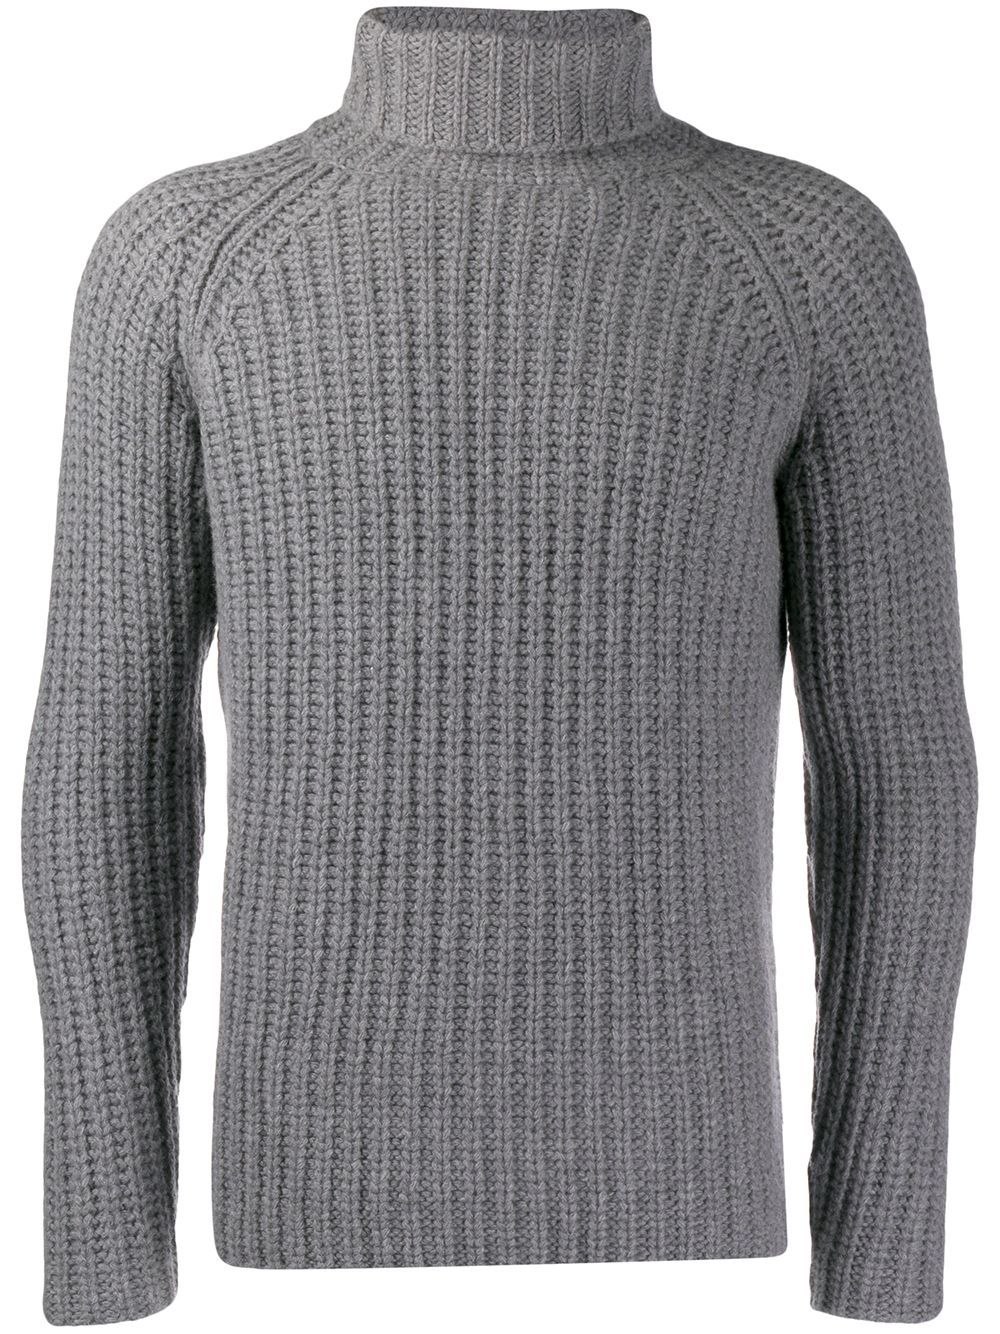 Strenesse Group свитер мужской шерсть